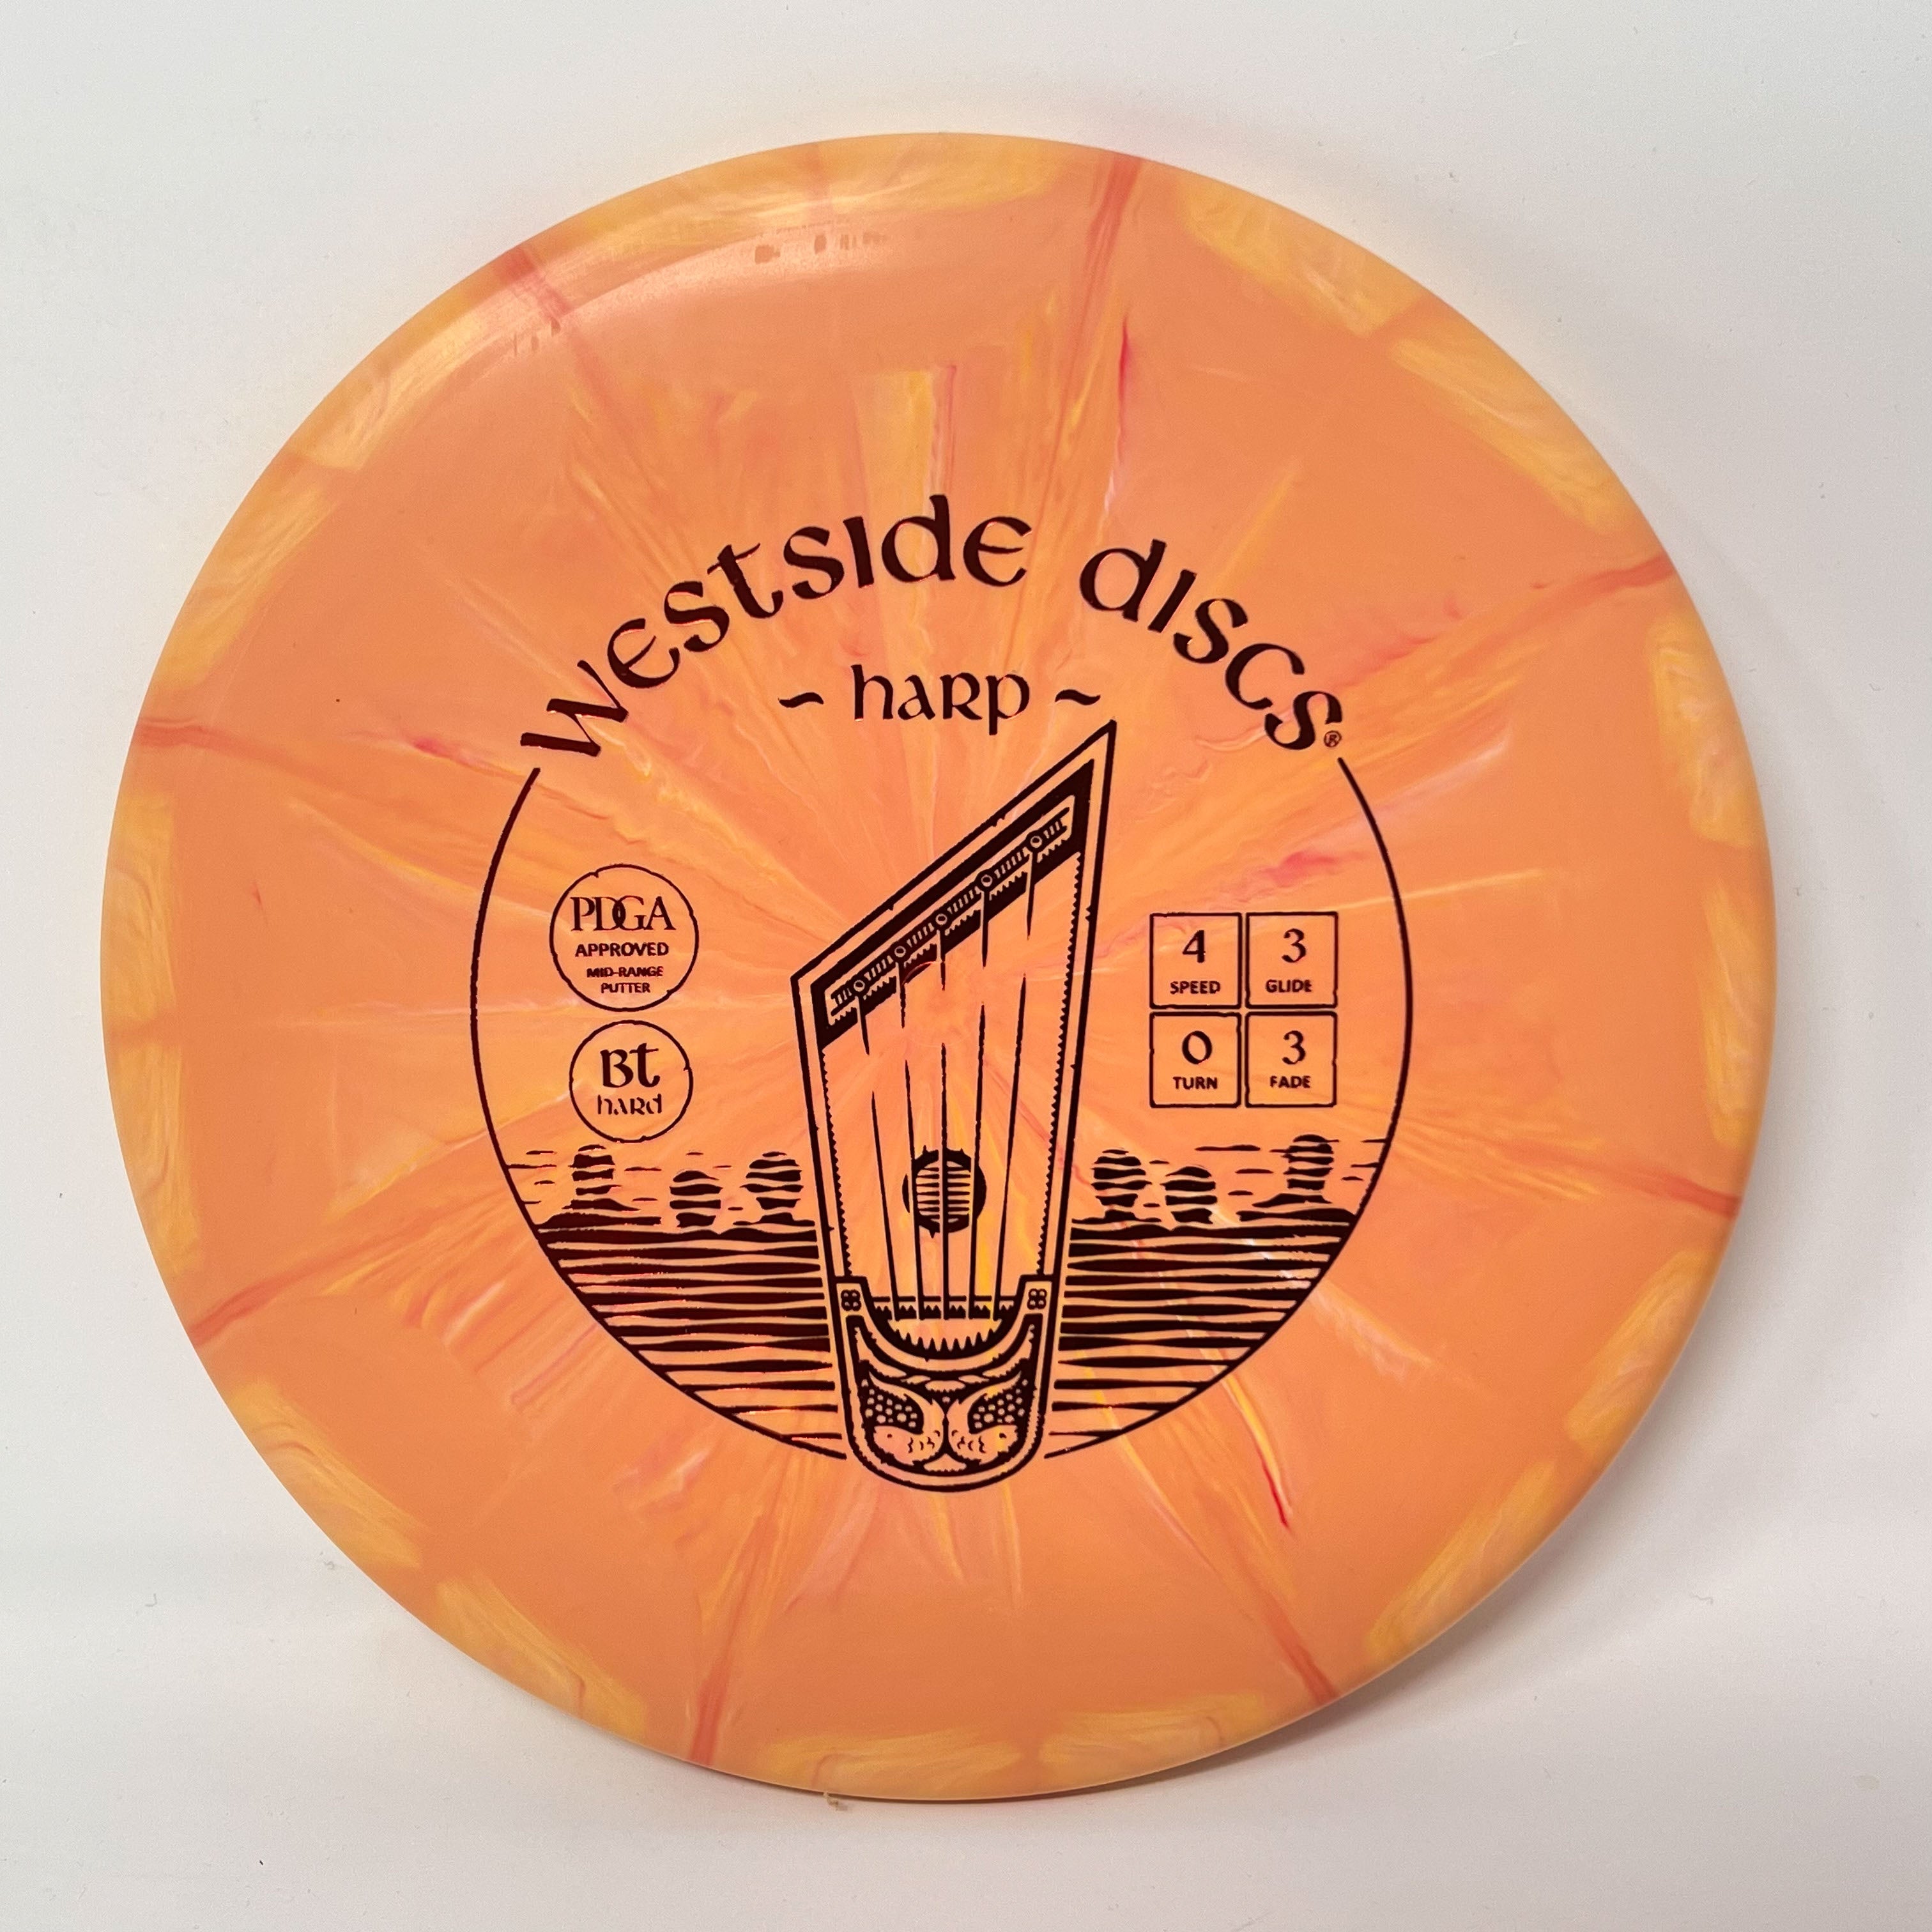 Westside Discs BT Hard Burst Harp